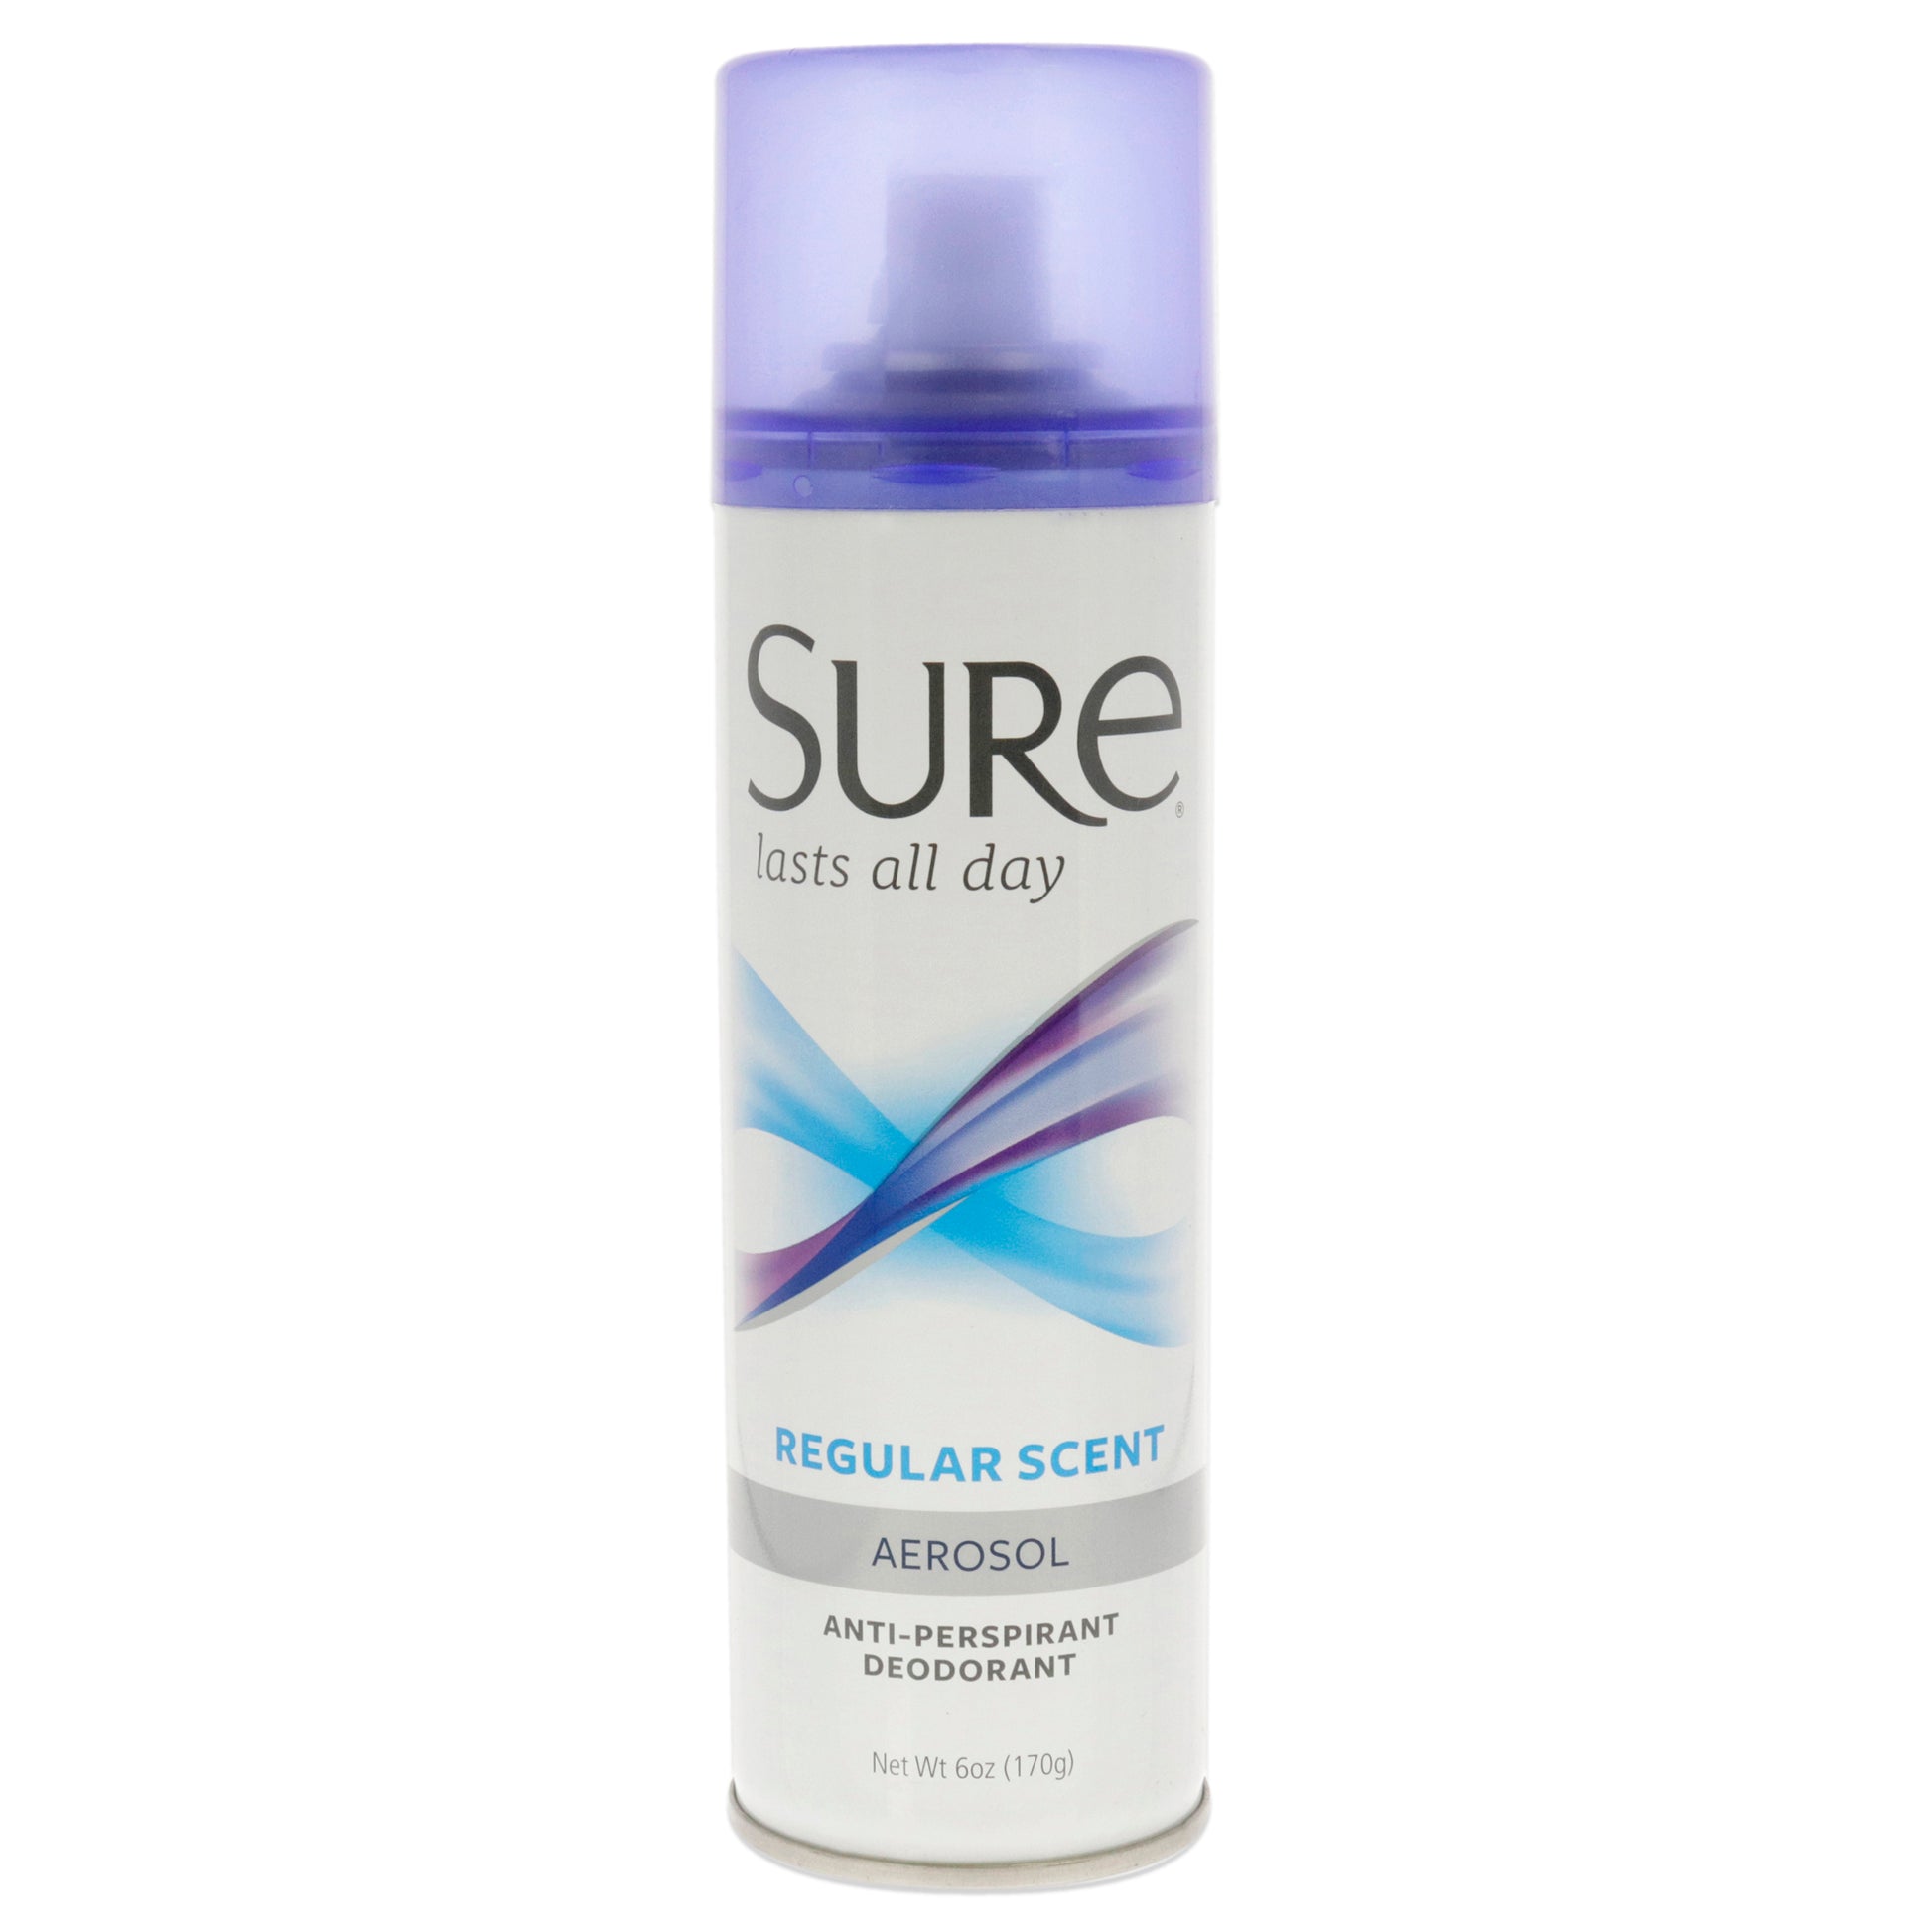 Aerosol Anti-Perspirant and Deodorant - Regular Scent by Sure for Unisex - 6 oz Deodorant Spray